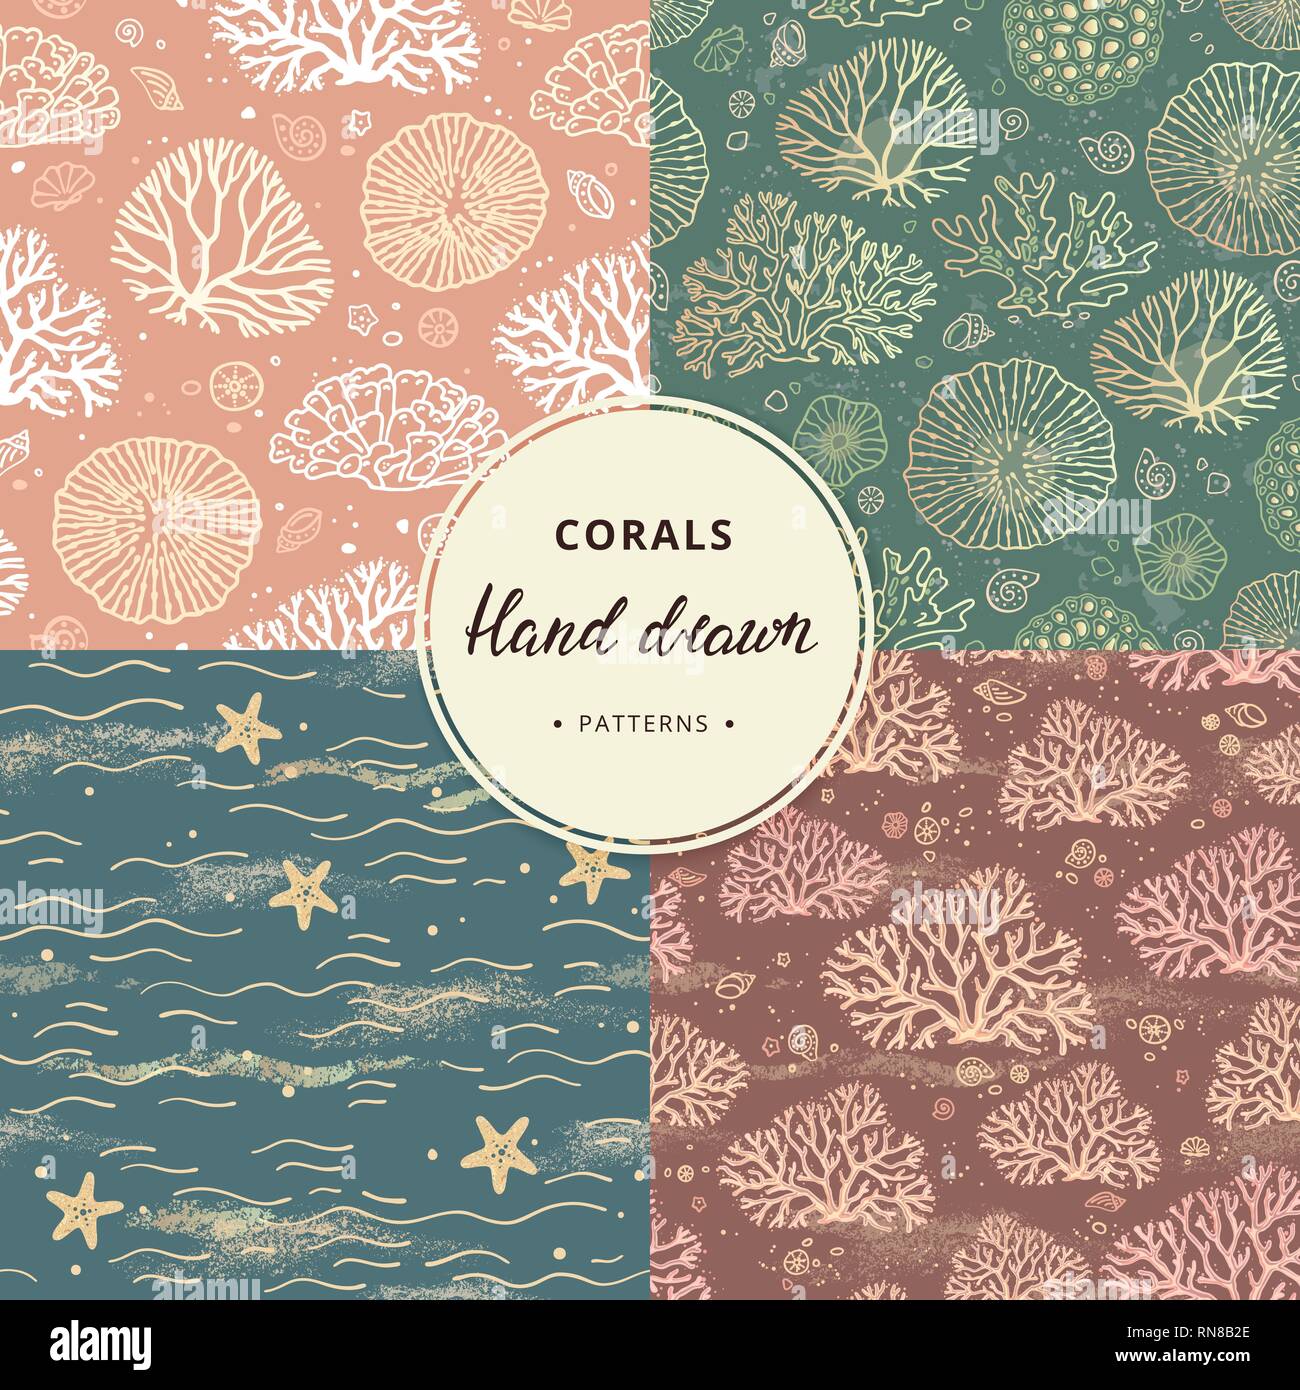 Eine handgezeichnete Sammlung von Korallen und Meer nahtlose Muster mit zusätzlichen Elementen in verschiedenen Farben. Stock Vektor